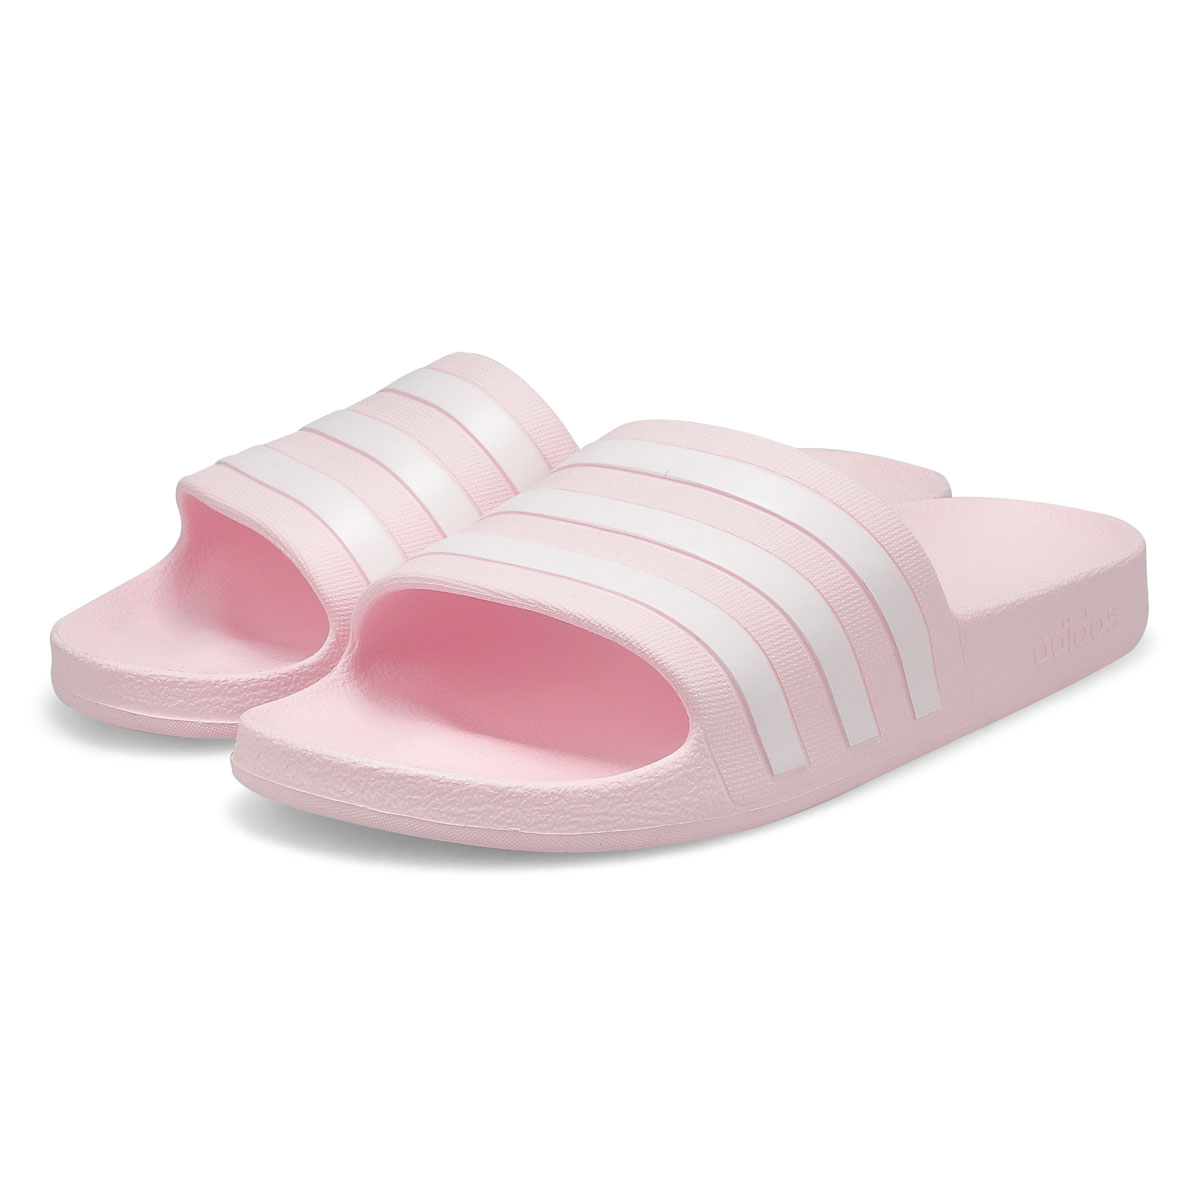 Women's Adilette Aqua Slide Sandal - Pink/White